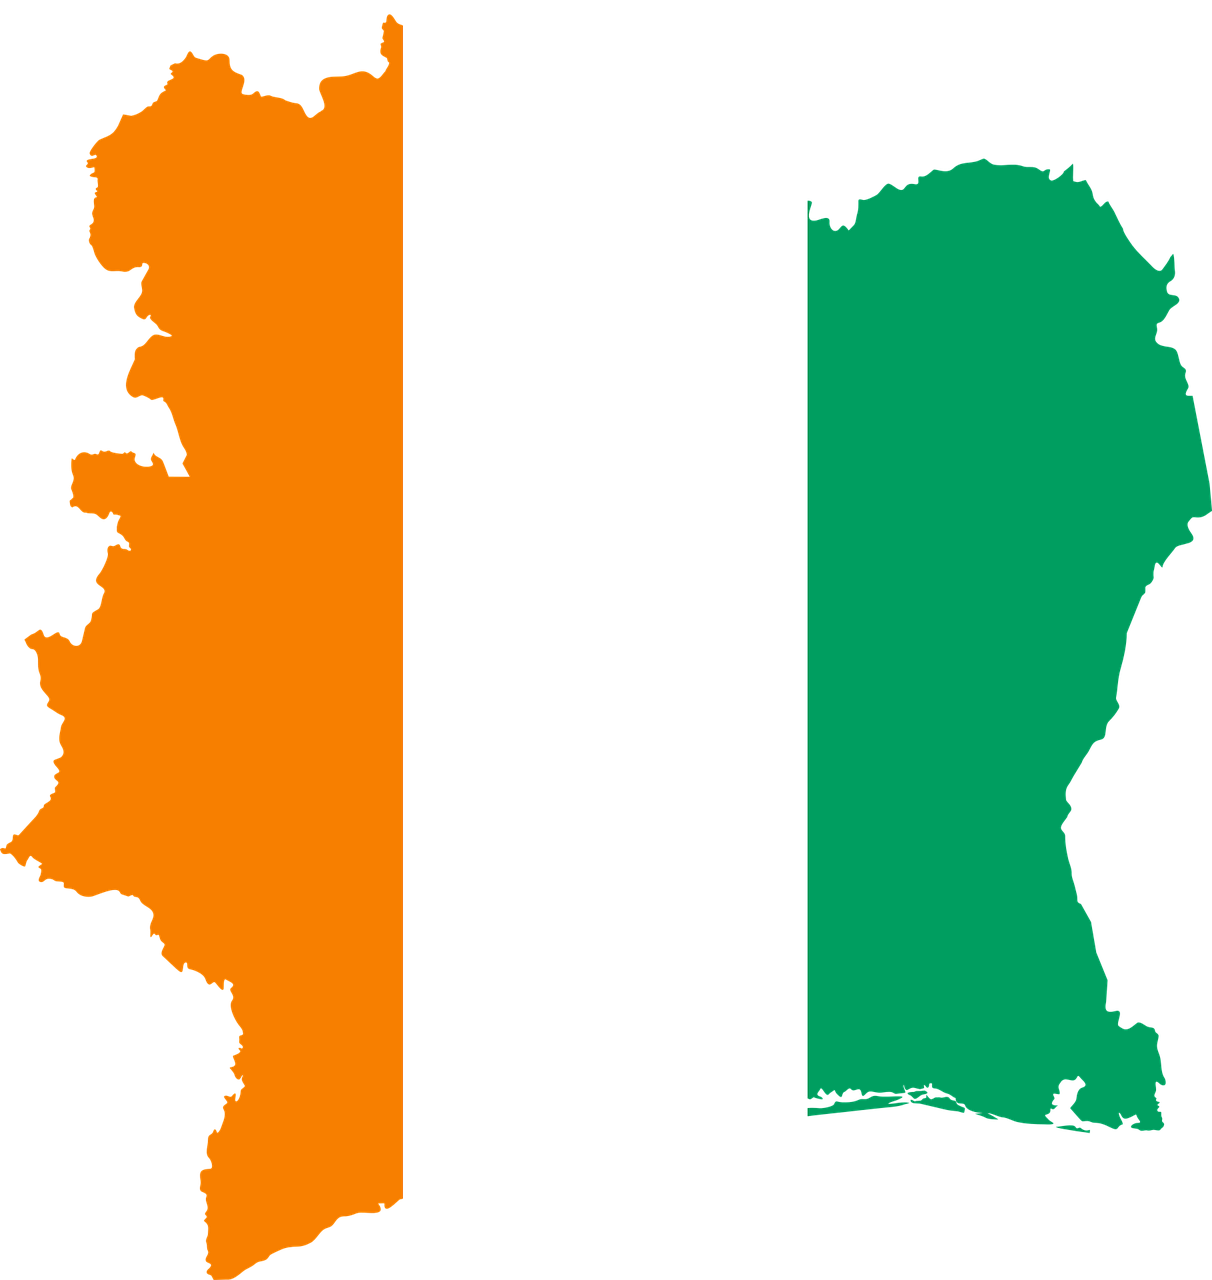 El Gobierno de Costa de Marfil informa haber mejorado su lucha contra la corrupción